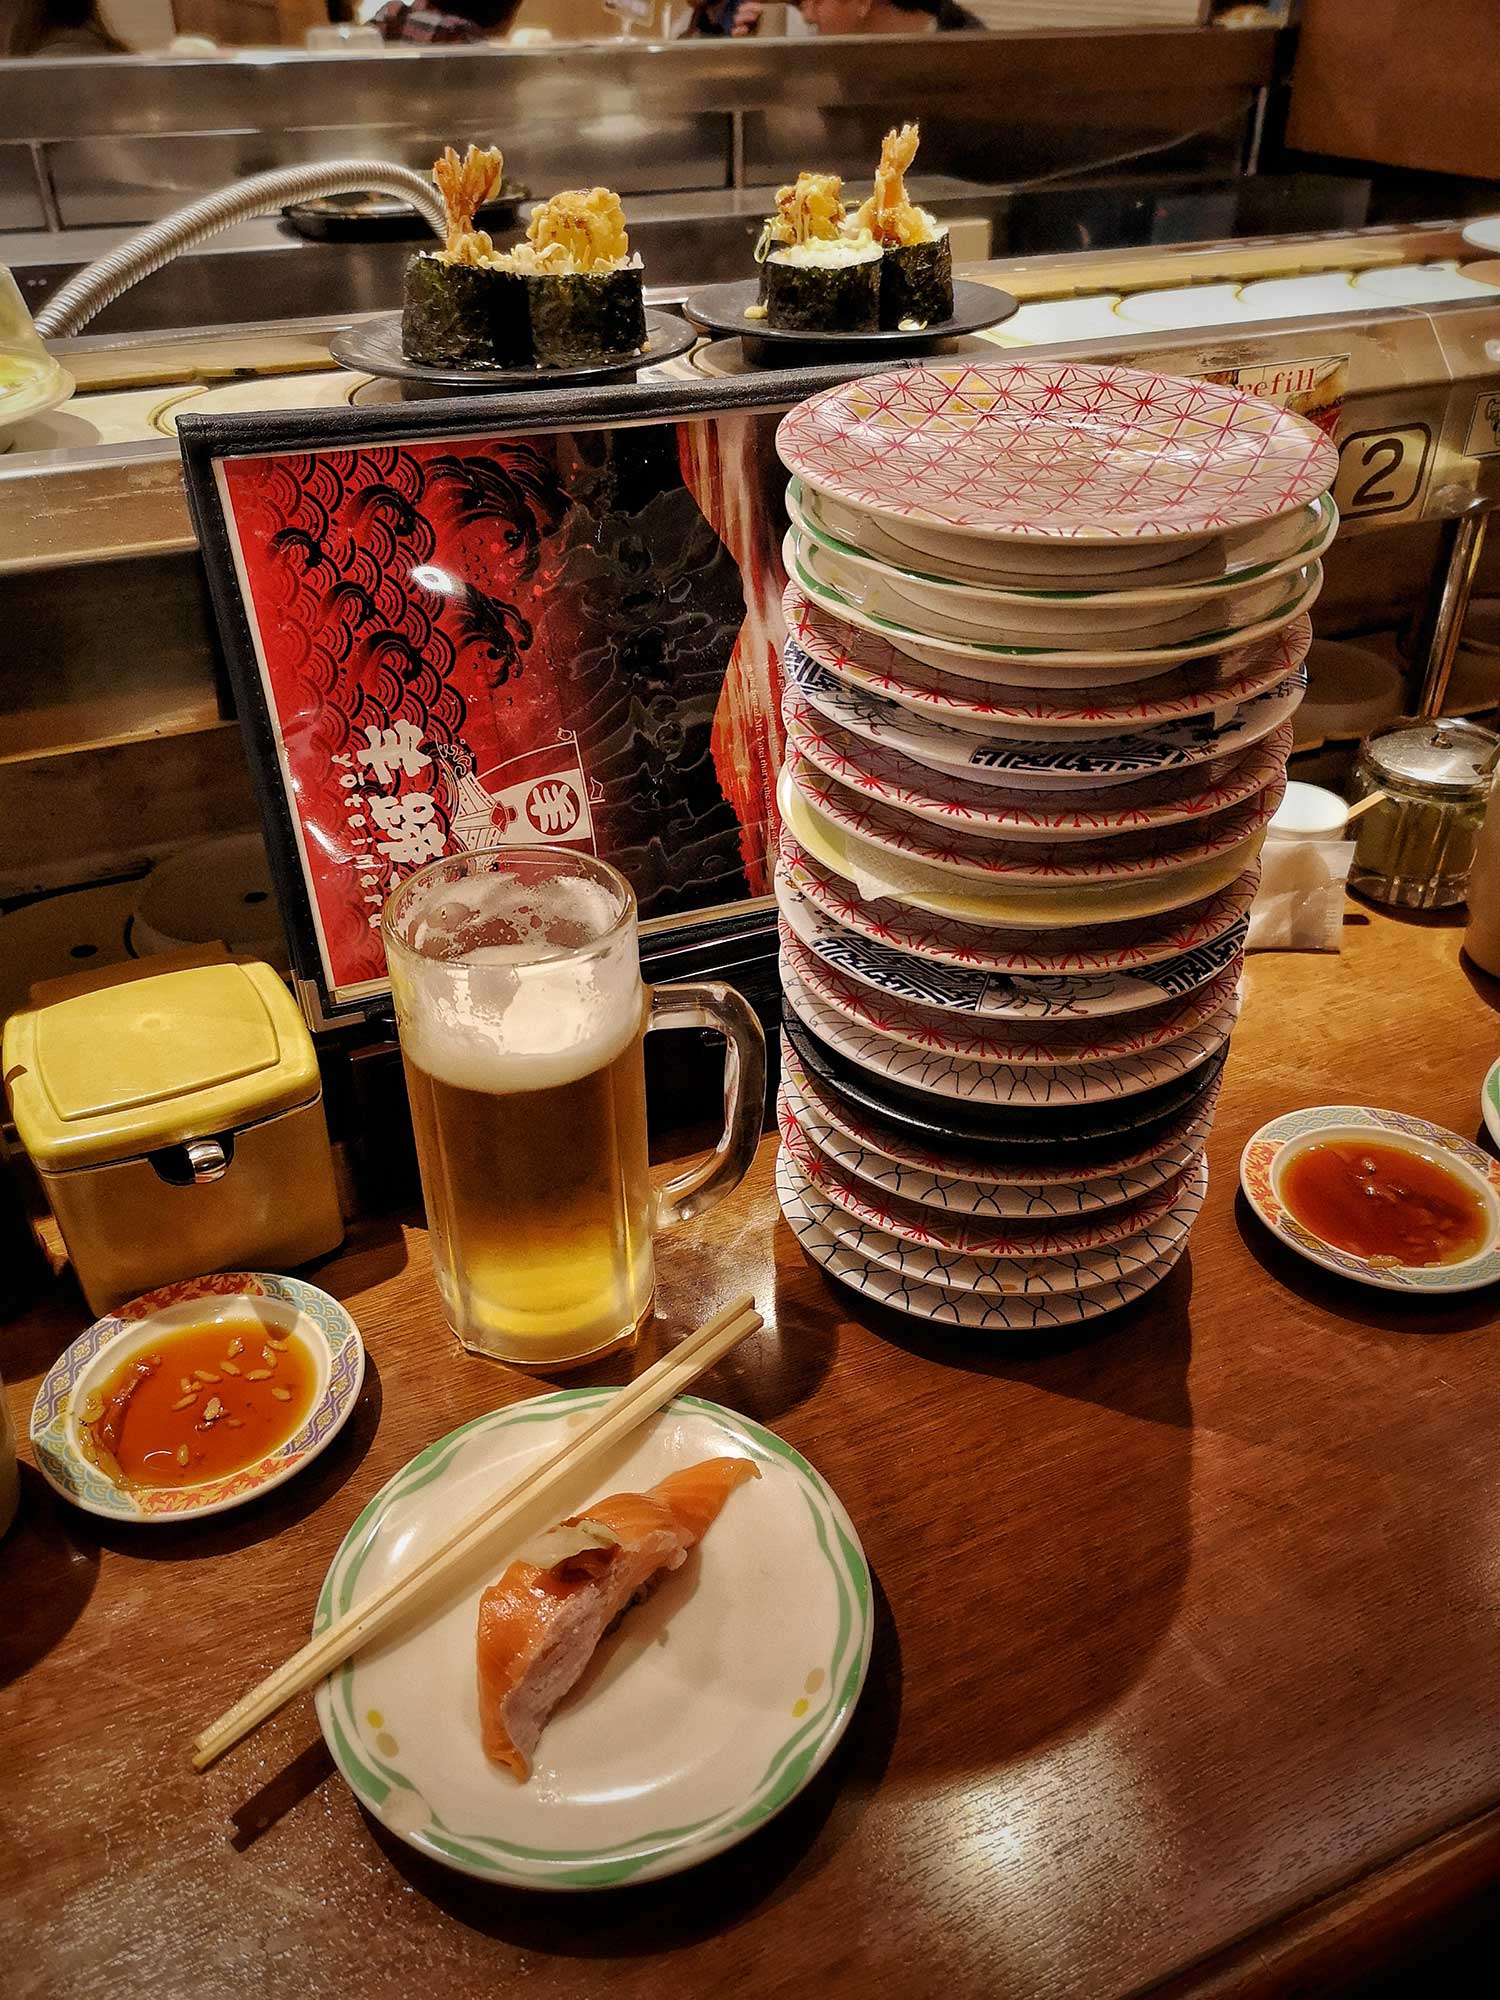 Eating sushi at a restaurant in Kutchan, Japan.